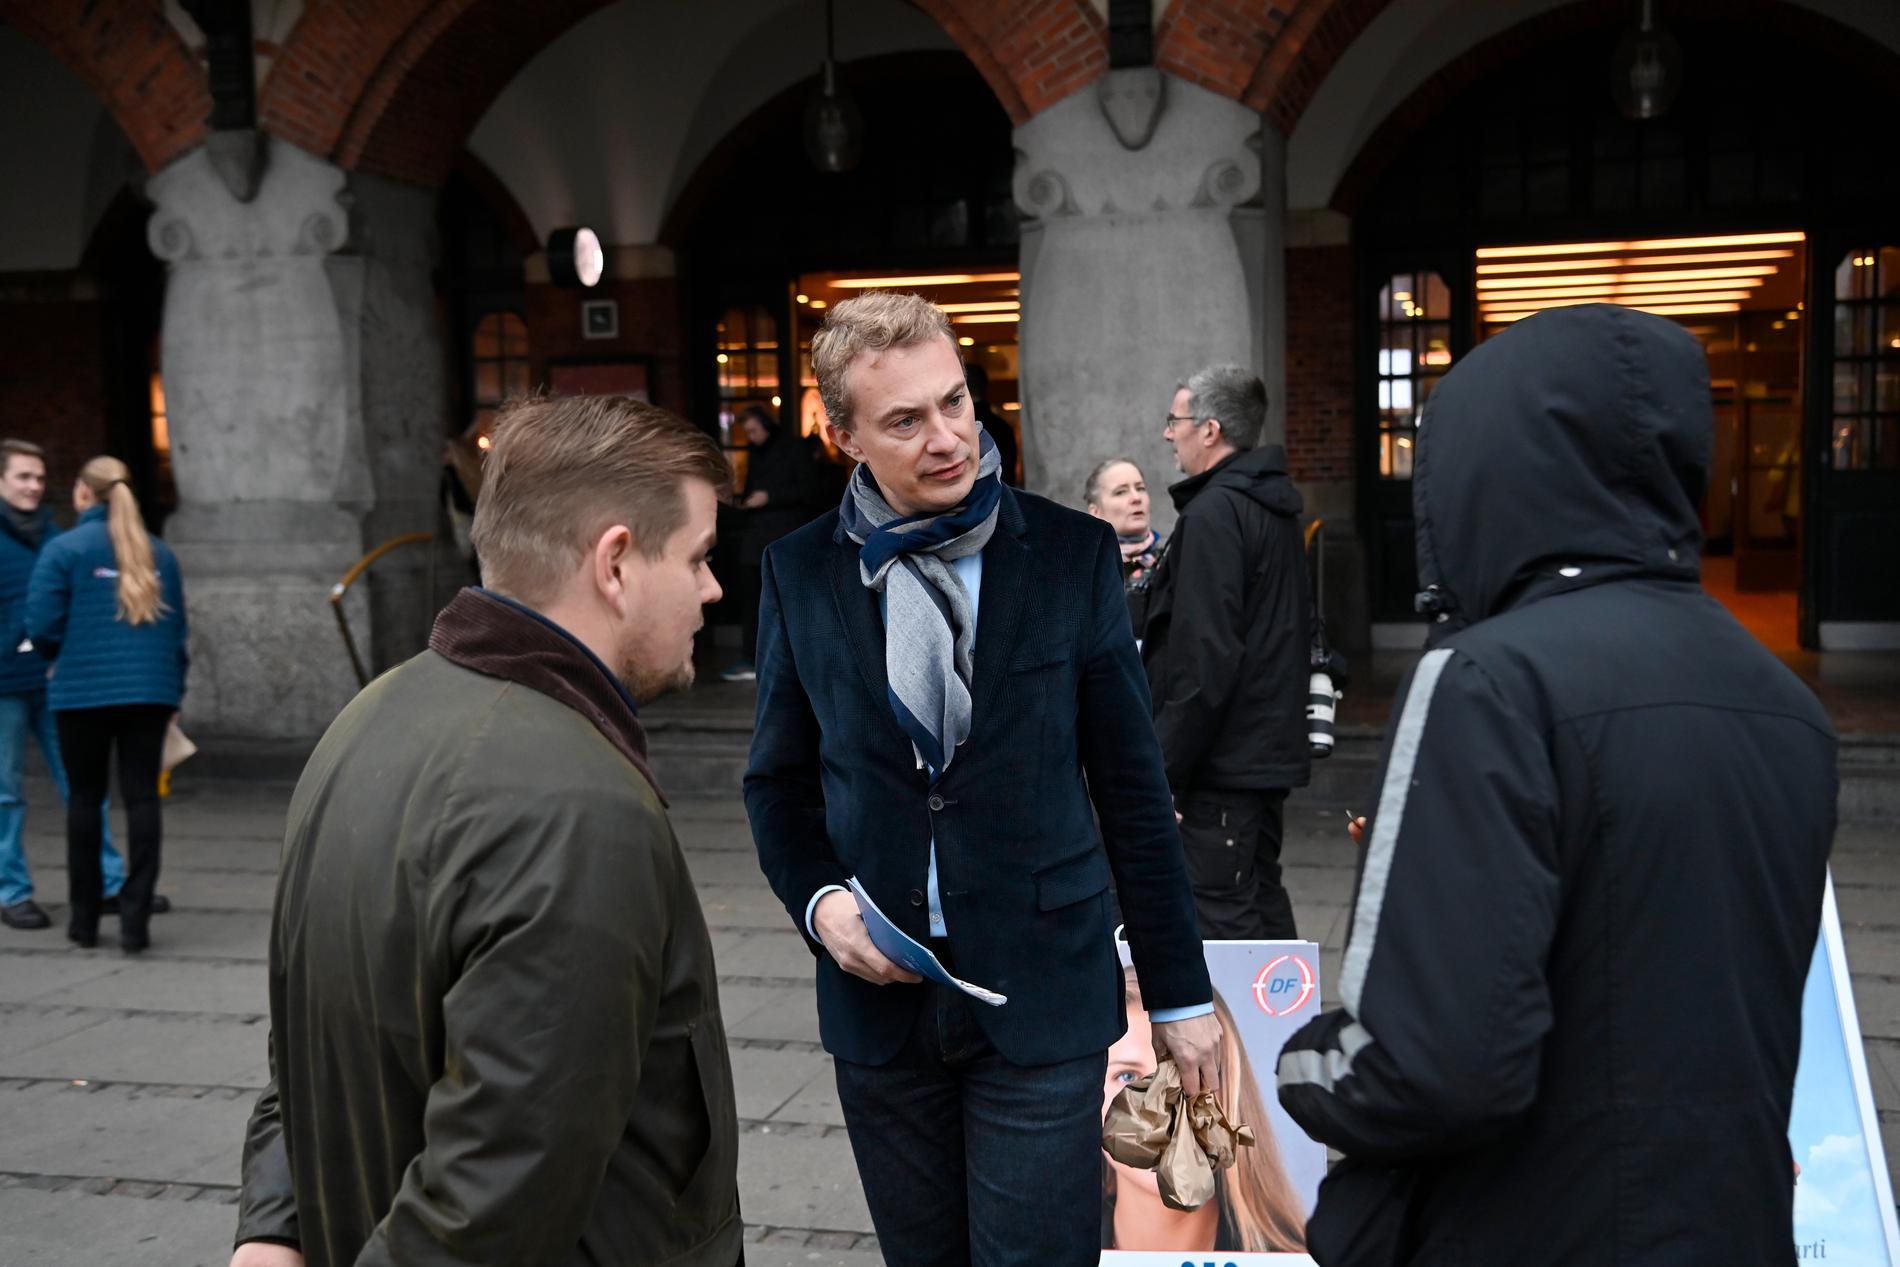 De stora glansdagarna är förbi. Men Morten Messerschmidt är säker på att Dansk folkeparti kommer in i folketinget.